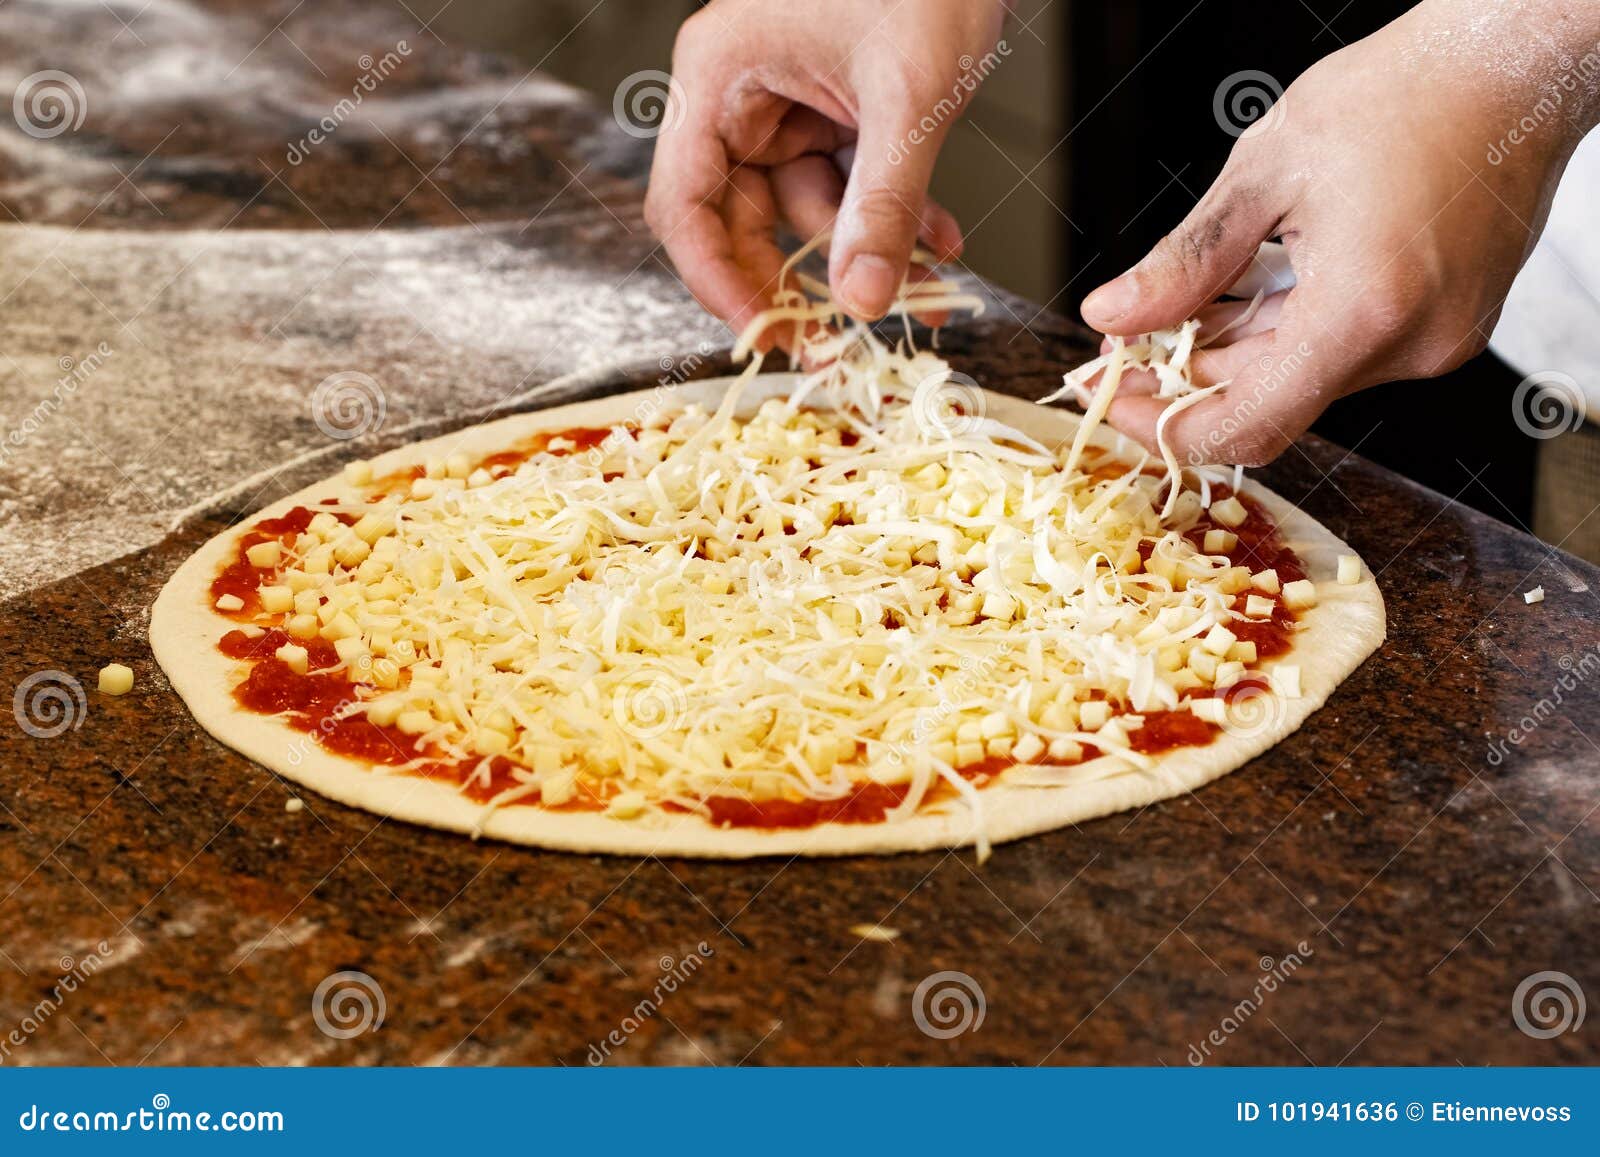 когда нужно класть сыр в пиццу в духовке фото 1